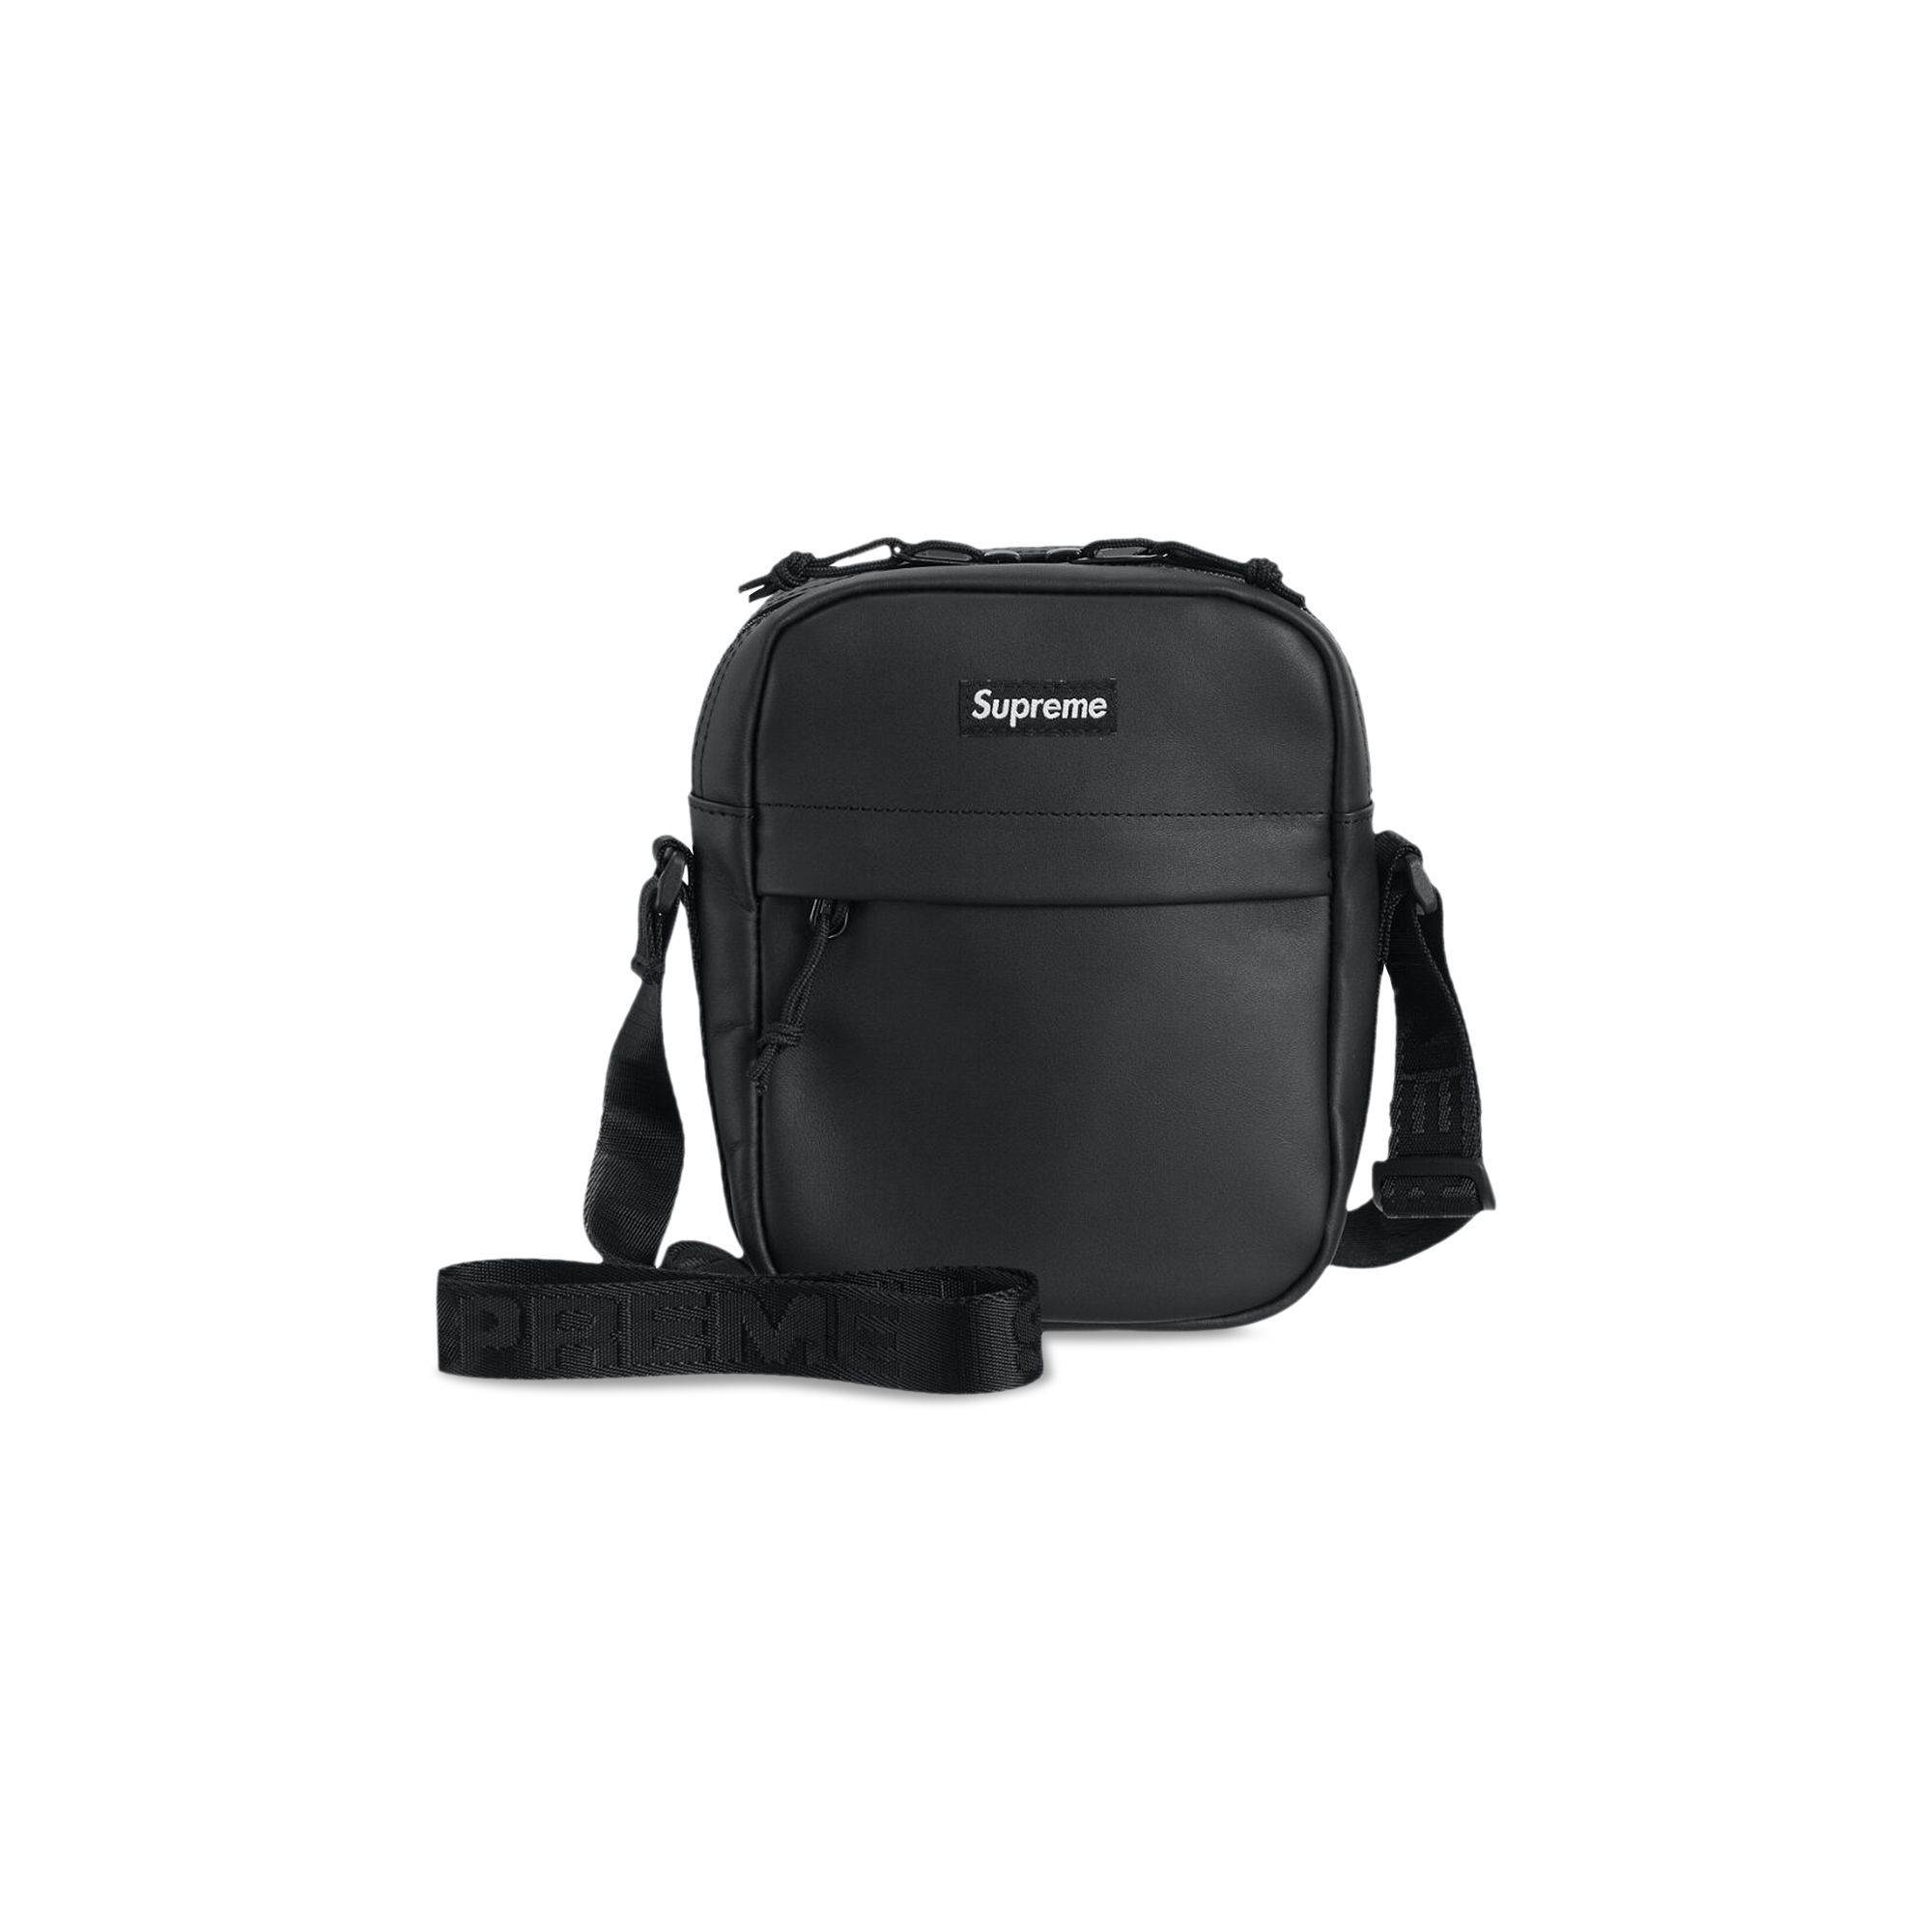 Supreme Leather Shoulder Bag 'Black' - 1